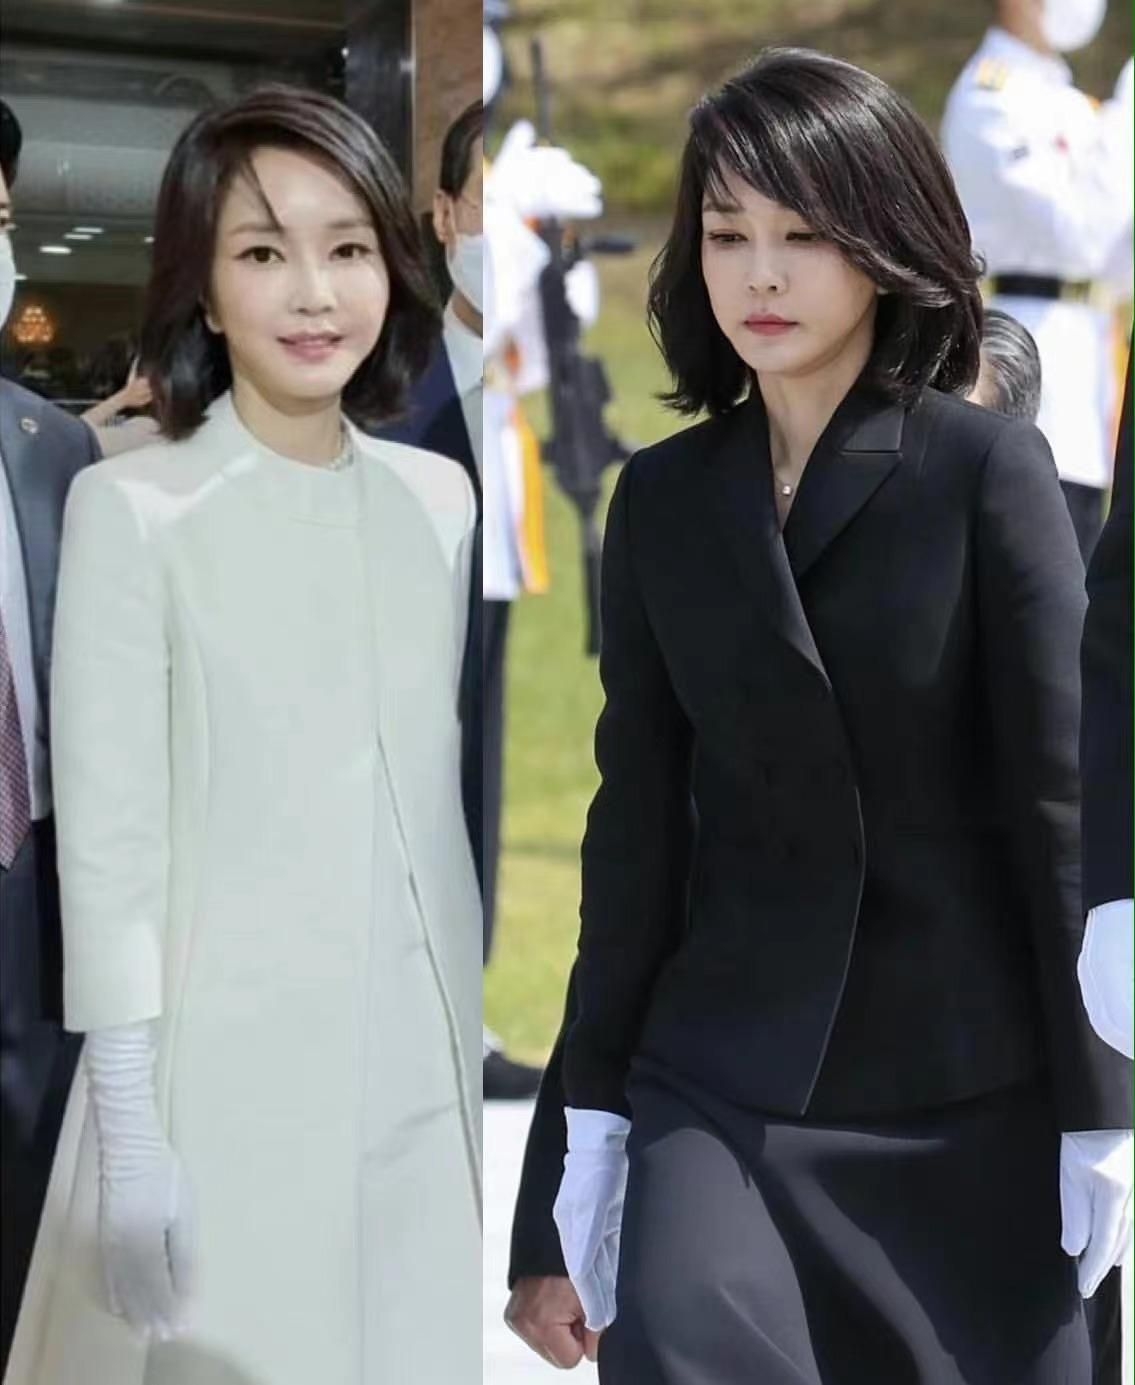 韩国第一夫人的美貌真不是盖的 50岁看着跟似的 气质确实够绝 造型 身材 味道